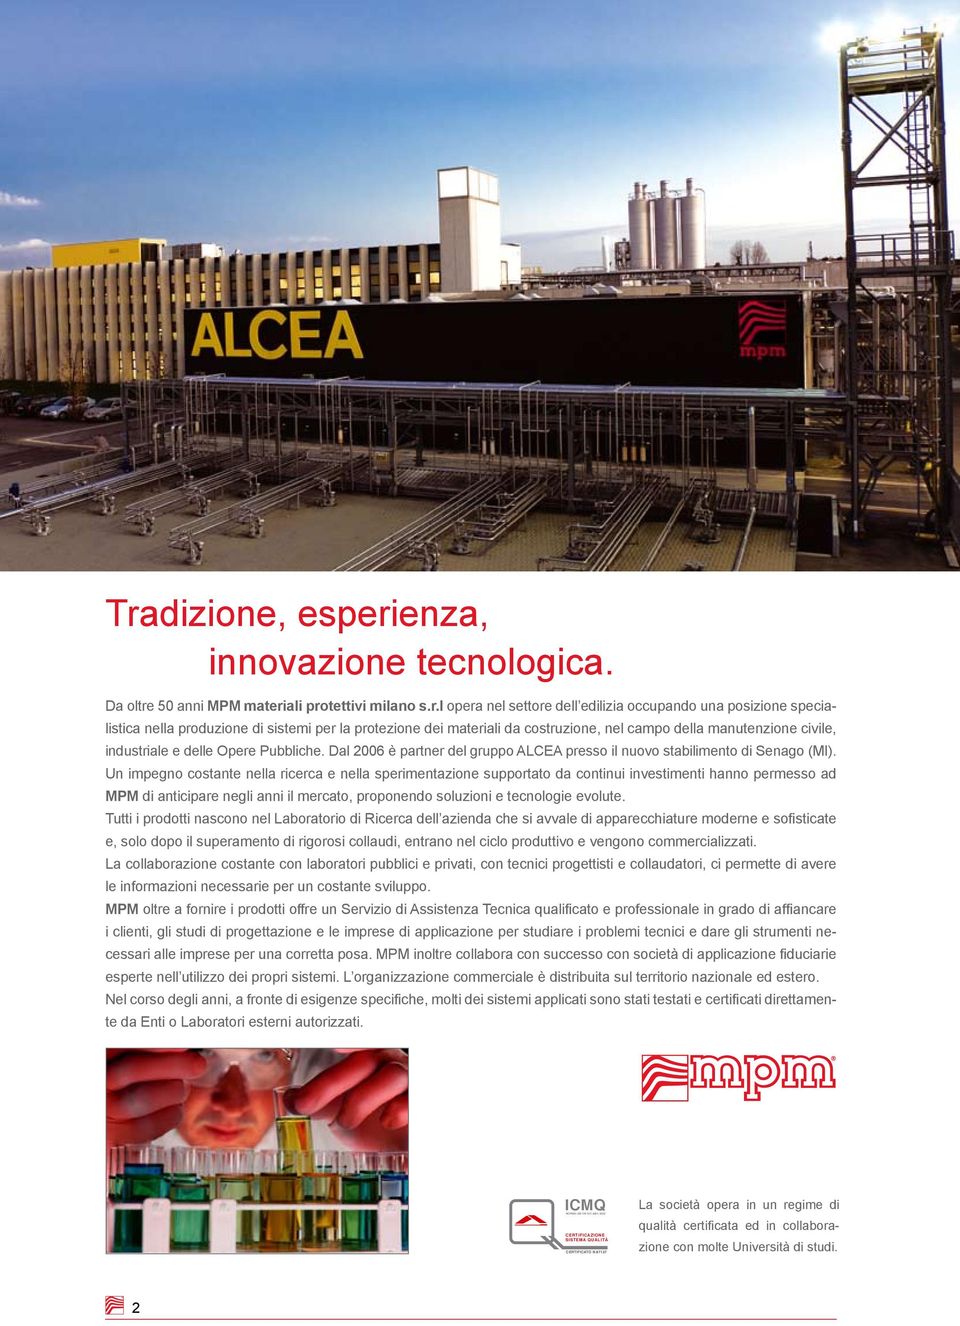 Dal 2006 è partner del gruppo ALCEA presso il nuovo stabilimento di Senago (MI).